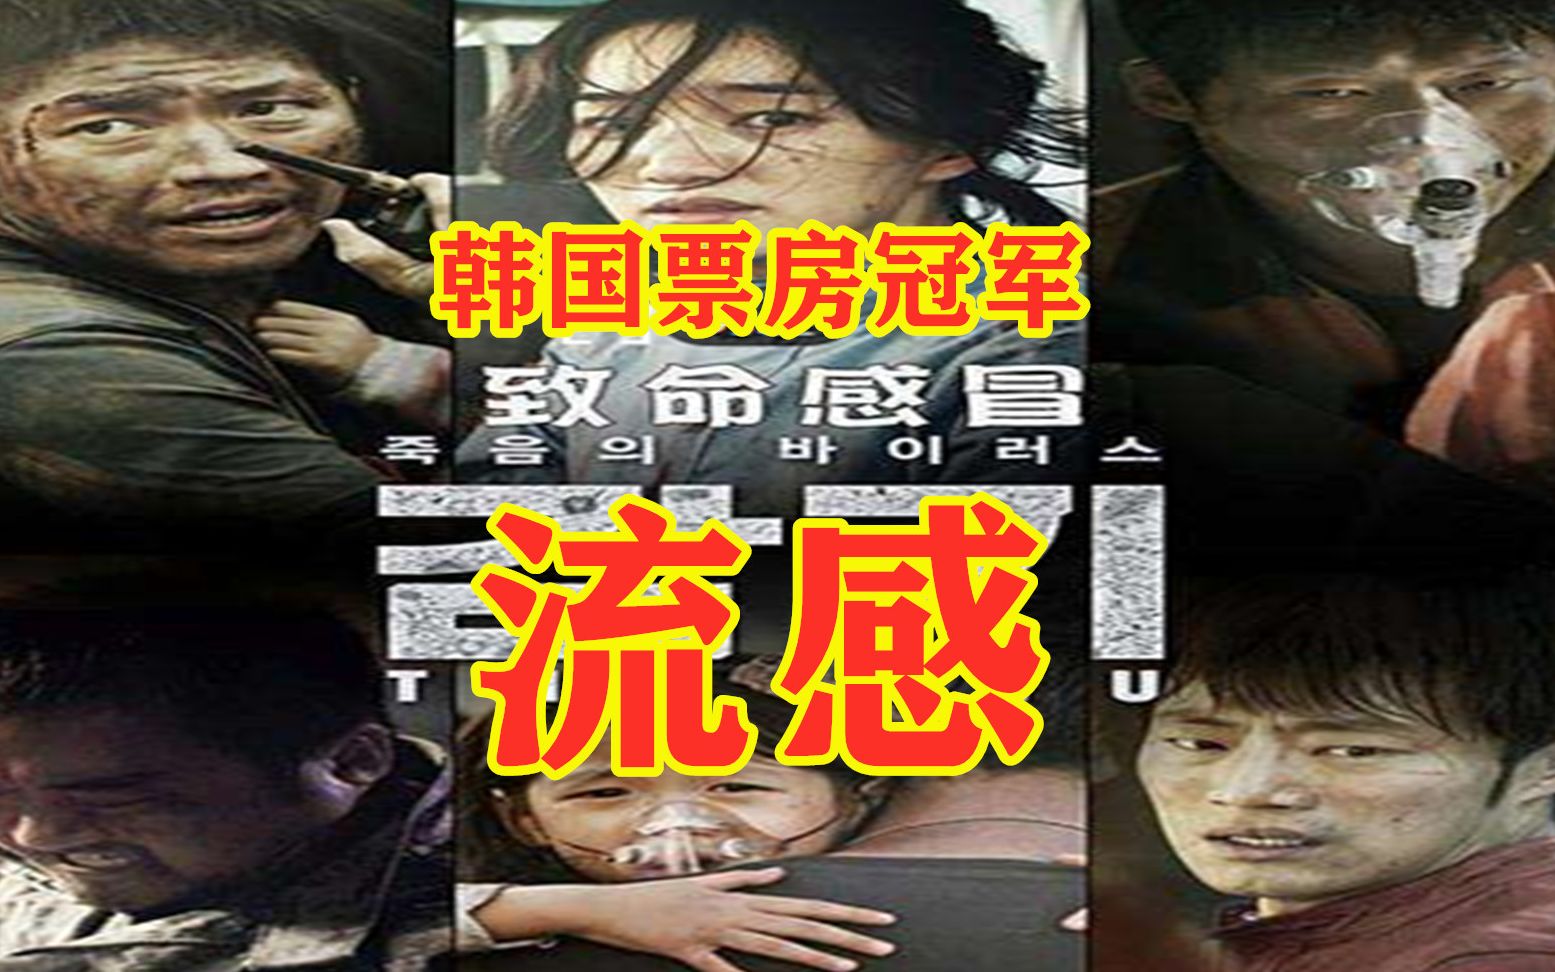 韩国票房冠军灾难电影《流感》,病毒肆虐全城,也彰显人性的本质